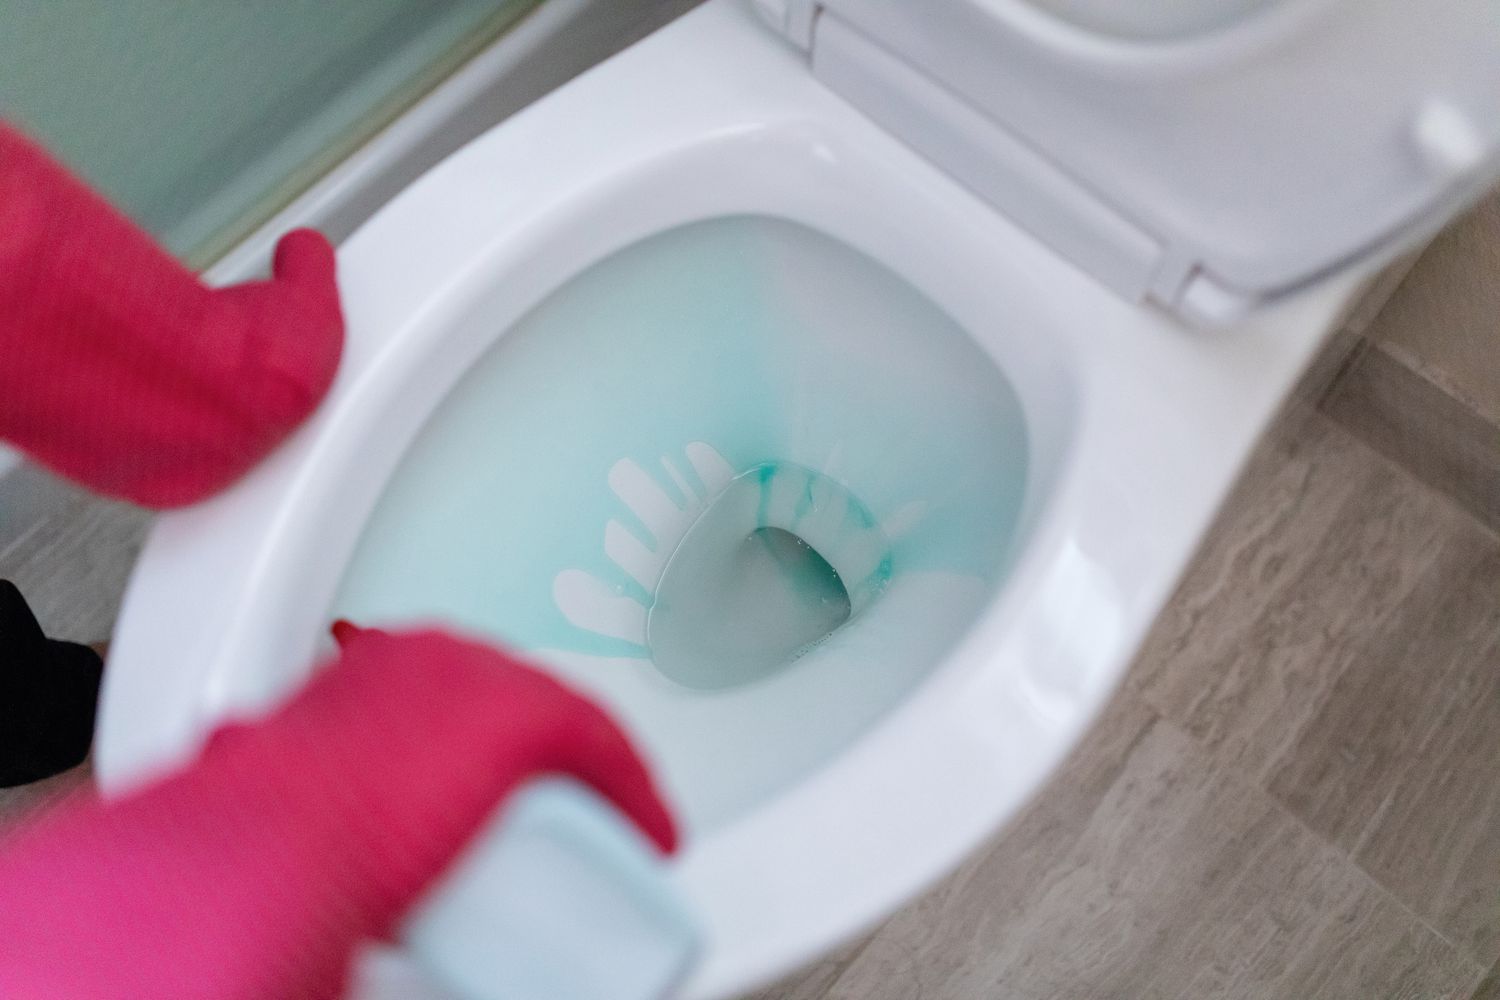 Adicione solução de limpeza ao vaso sanitário antes de dar a descarga